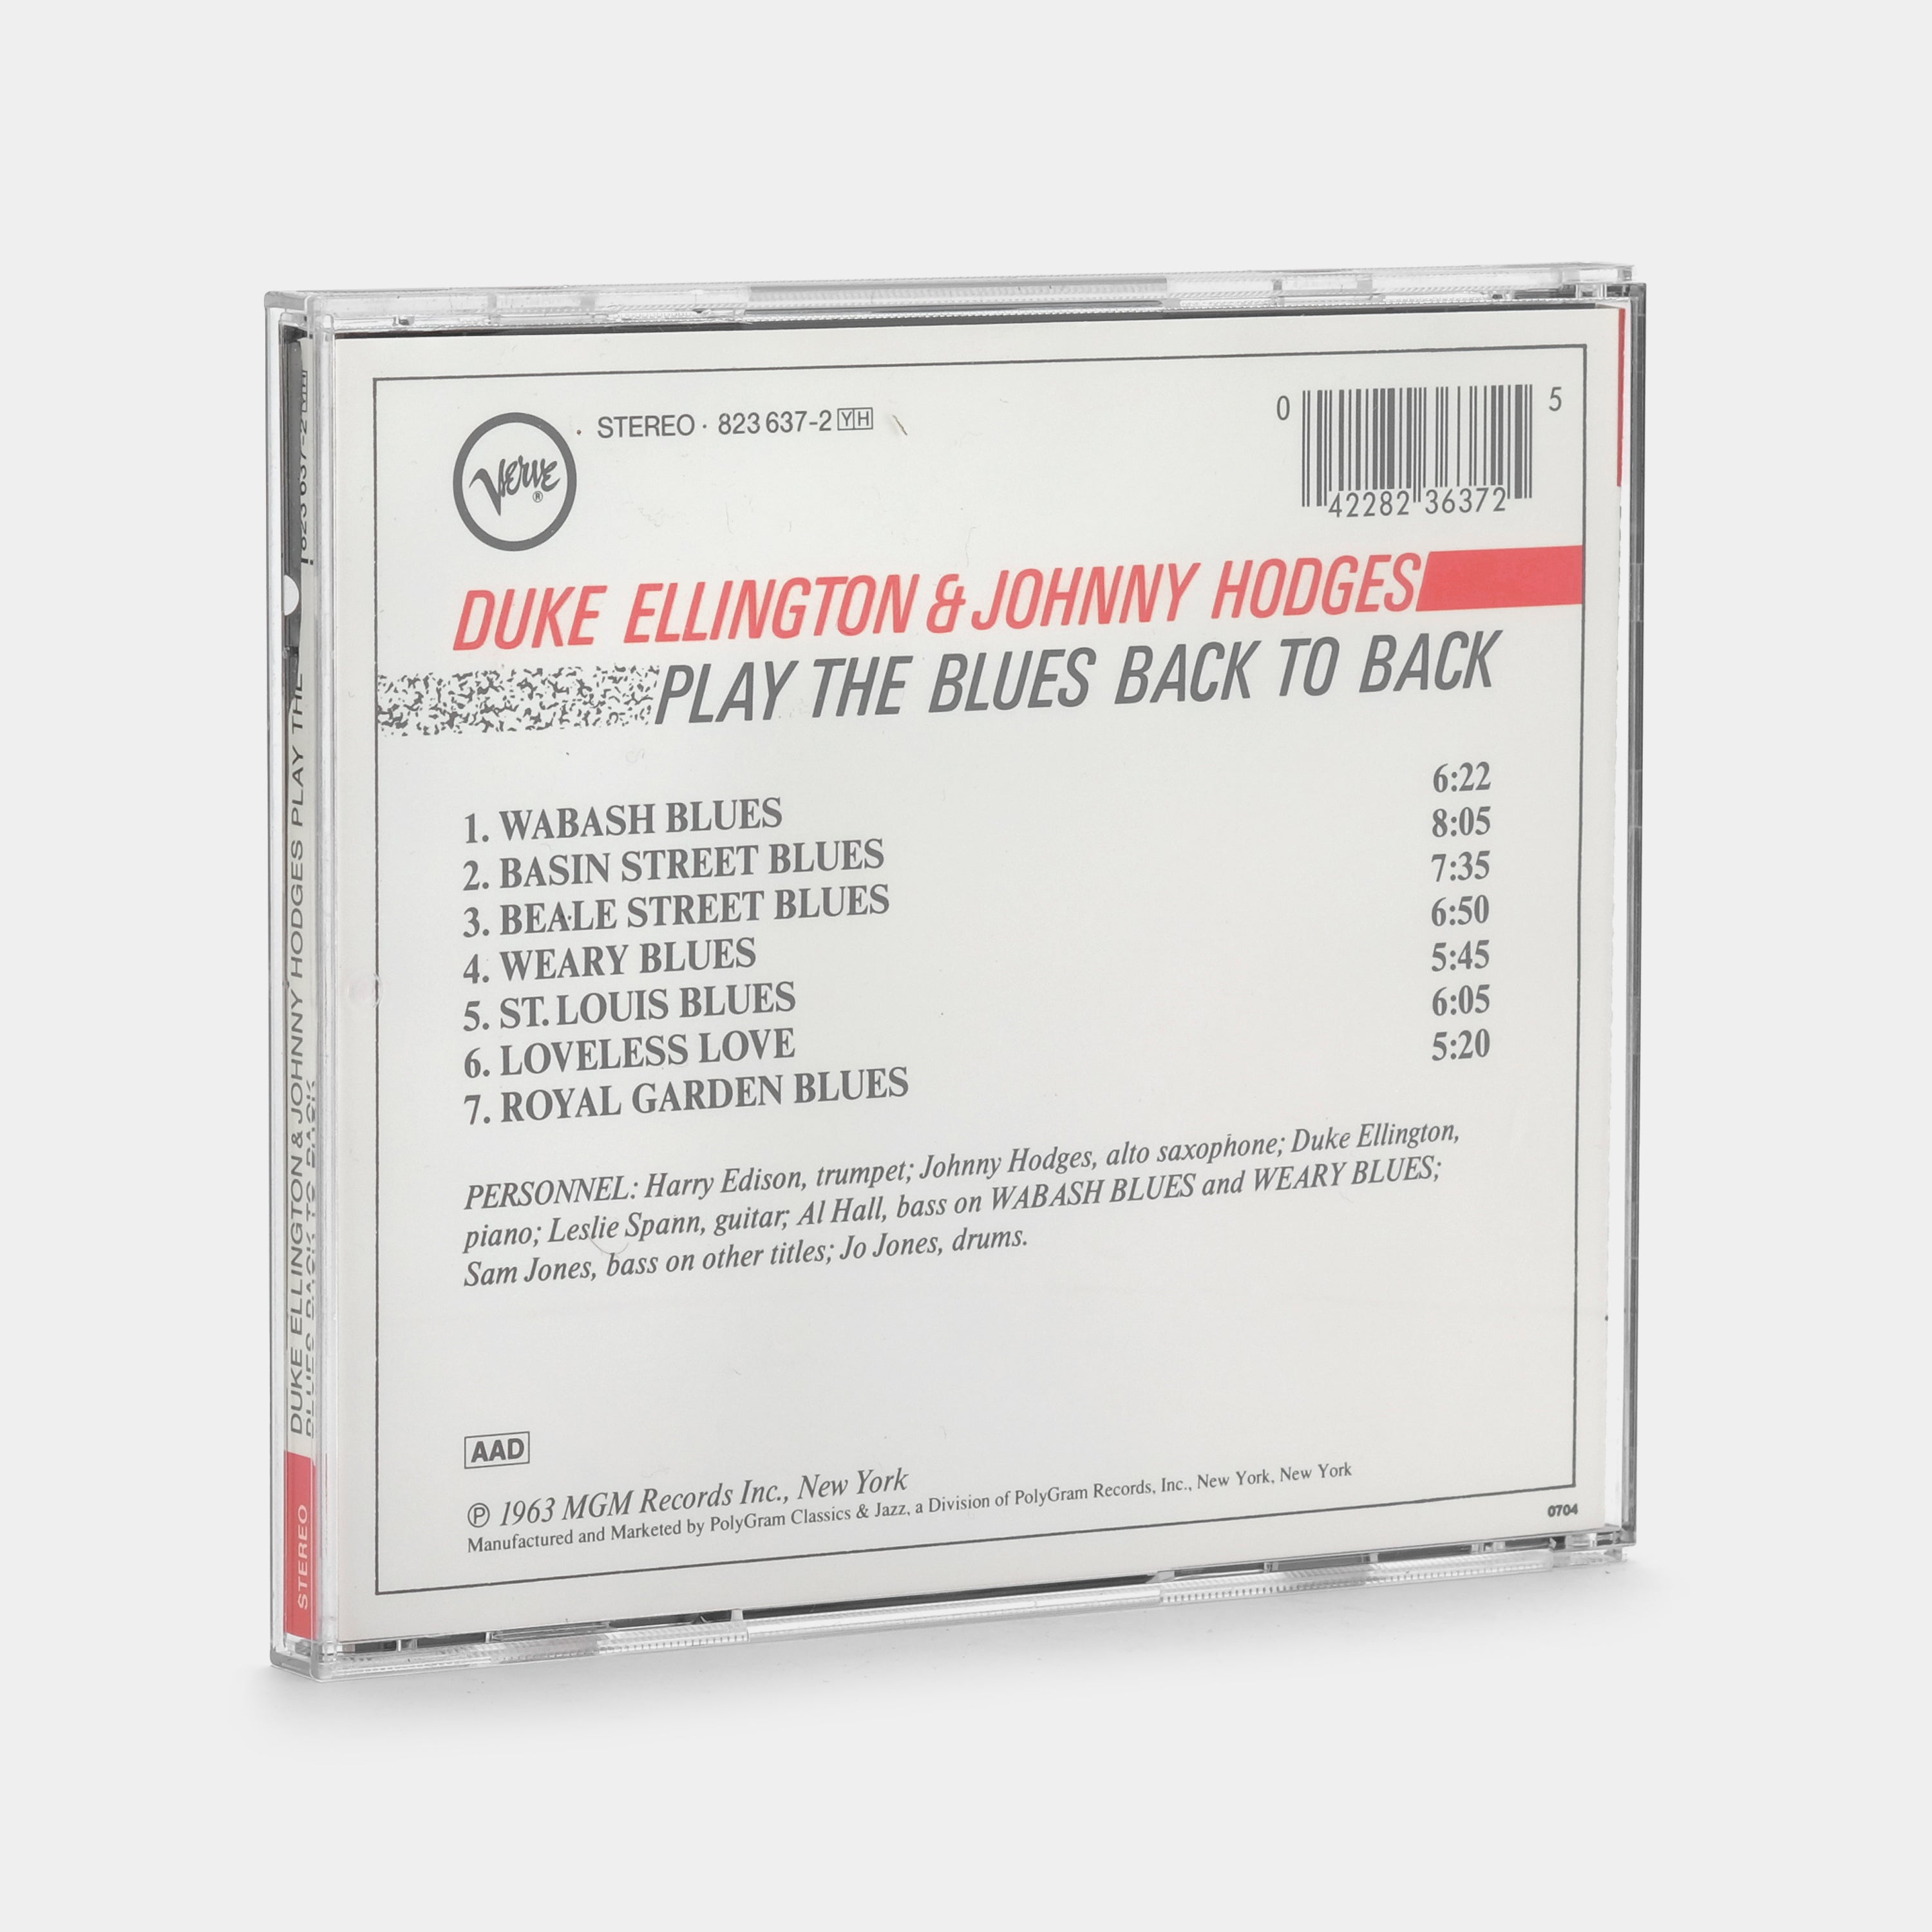 Duke Ellington & Johnny Hodges - Back To Back (Duke Ellington And Johnny Hodges Play The Blues) CD